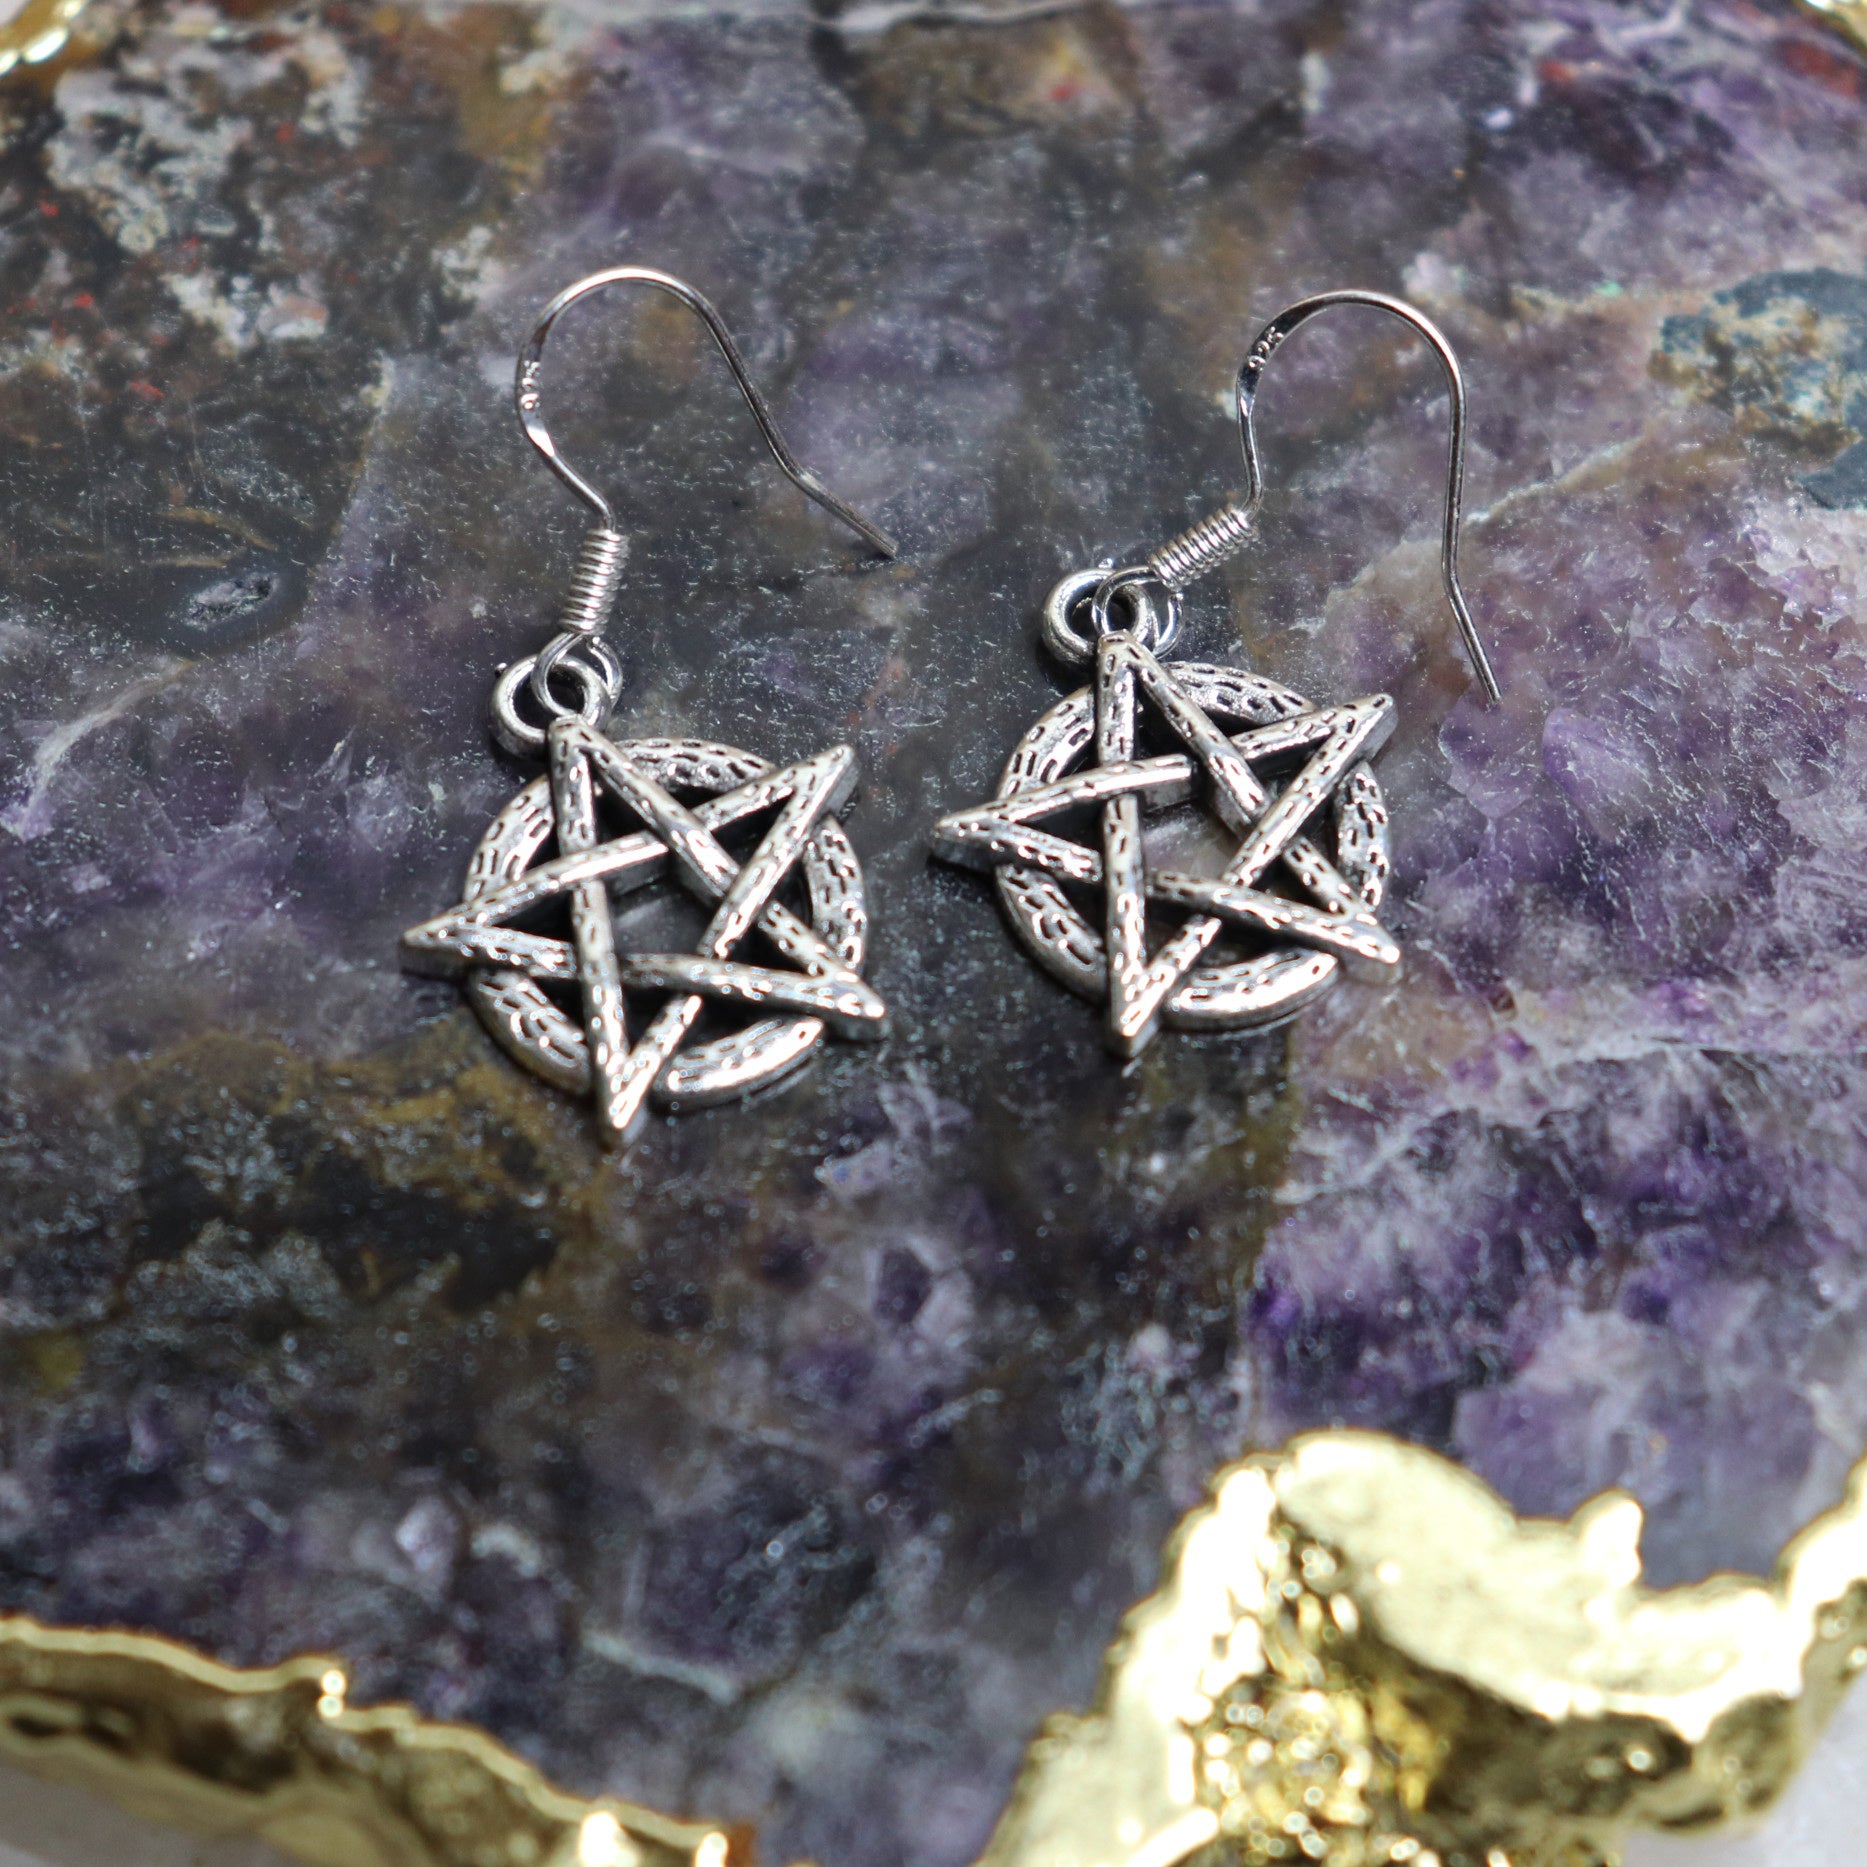 Handmade Pentagram Earrings - The Spirit of Life